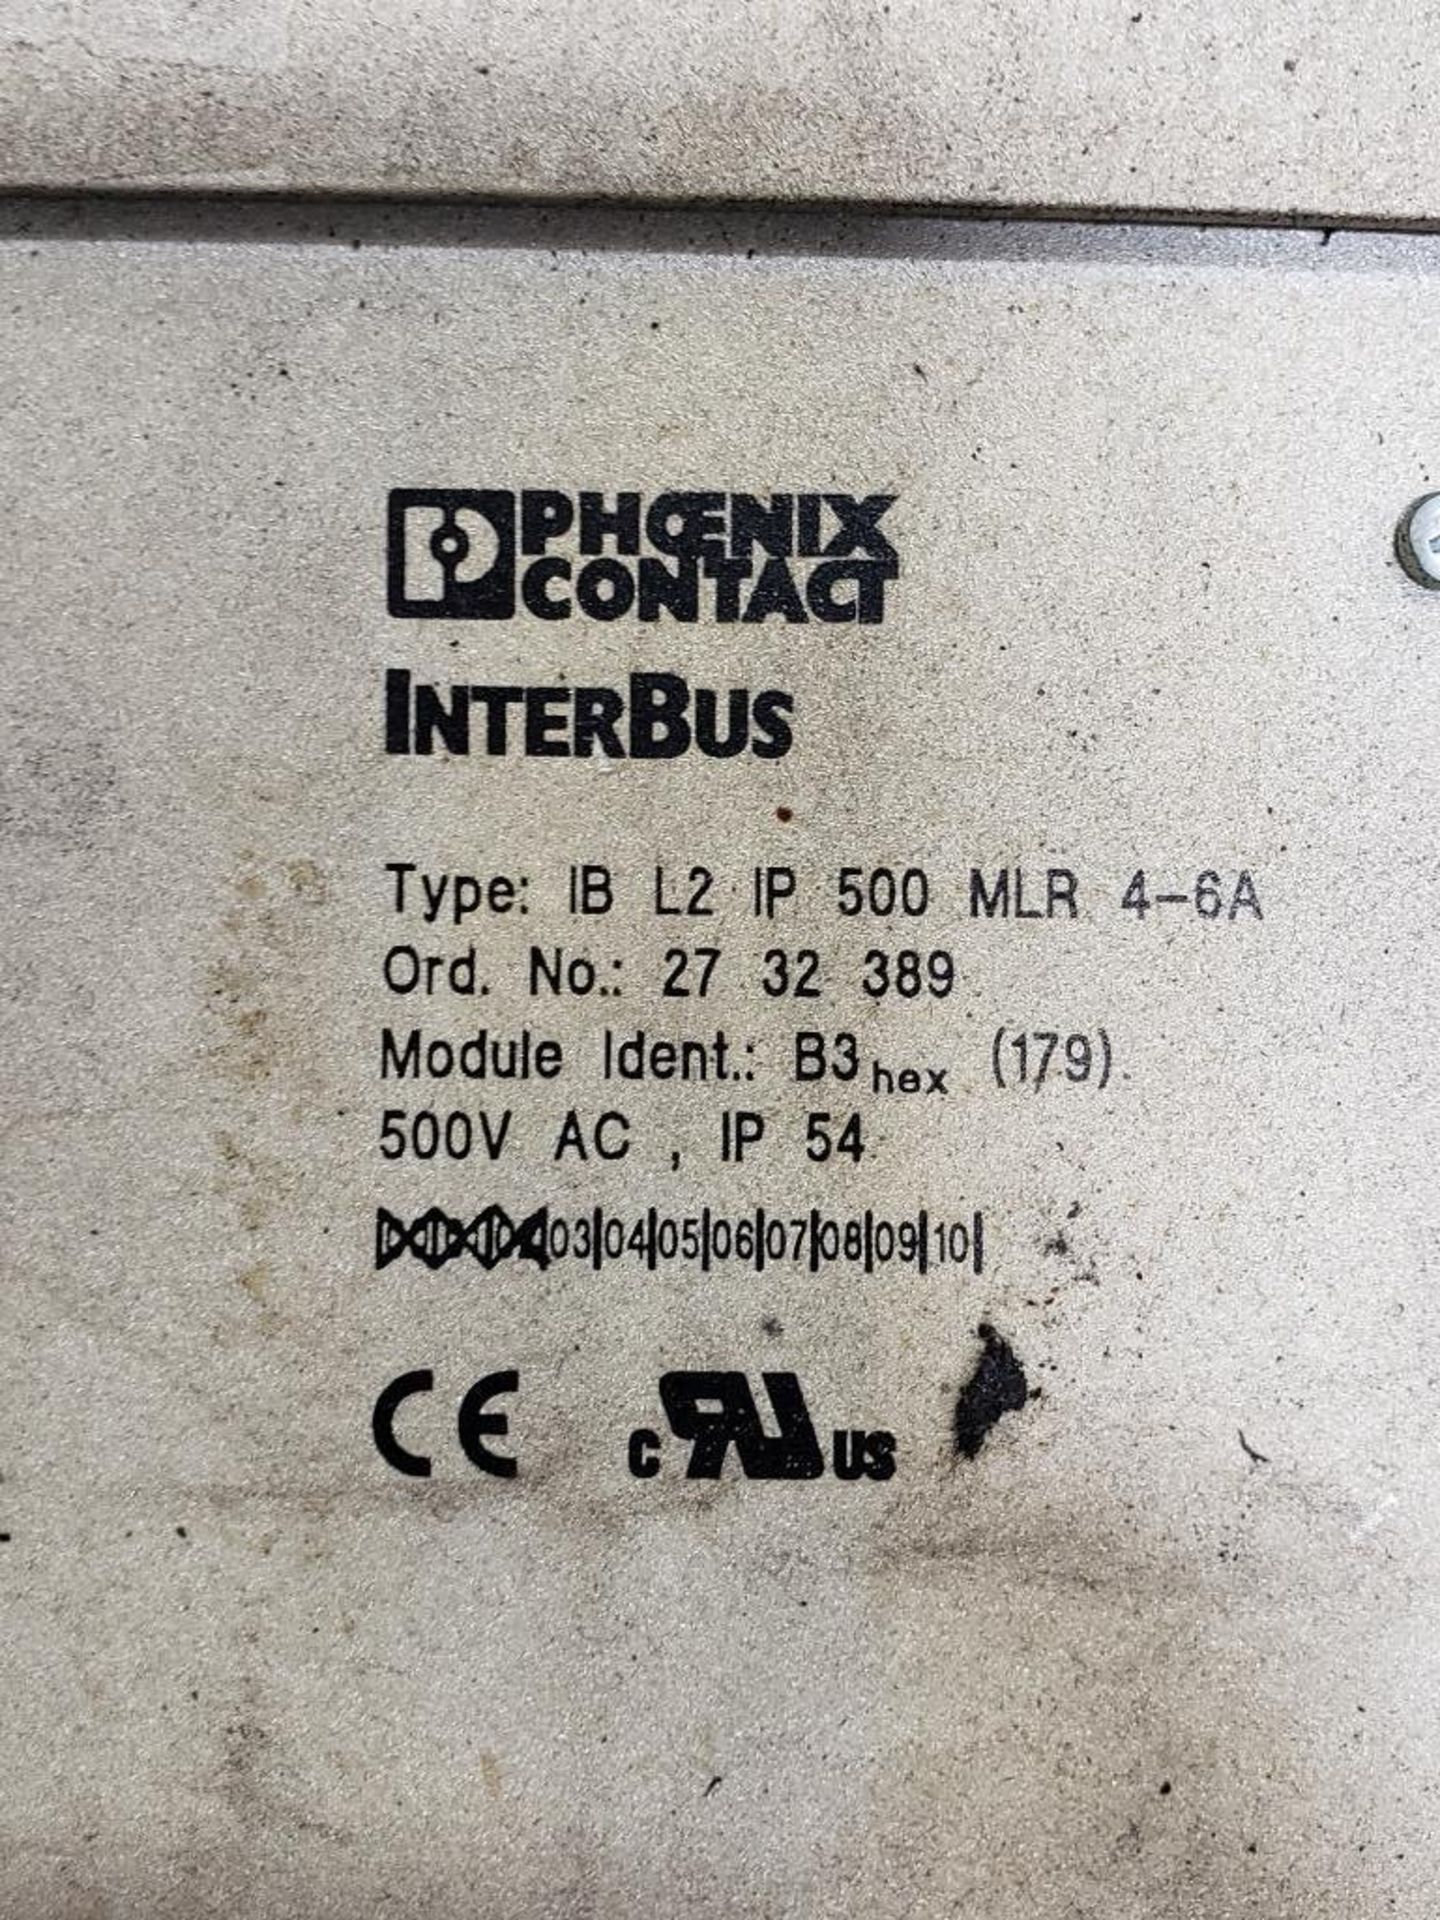 Qty 2 - Phoenix Contact Interbus Model IB-L2-IP-500-MLR-4-6A controller. - Image 2 of 2